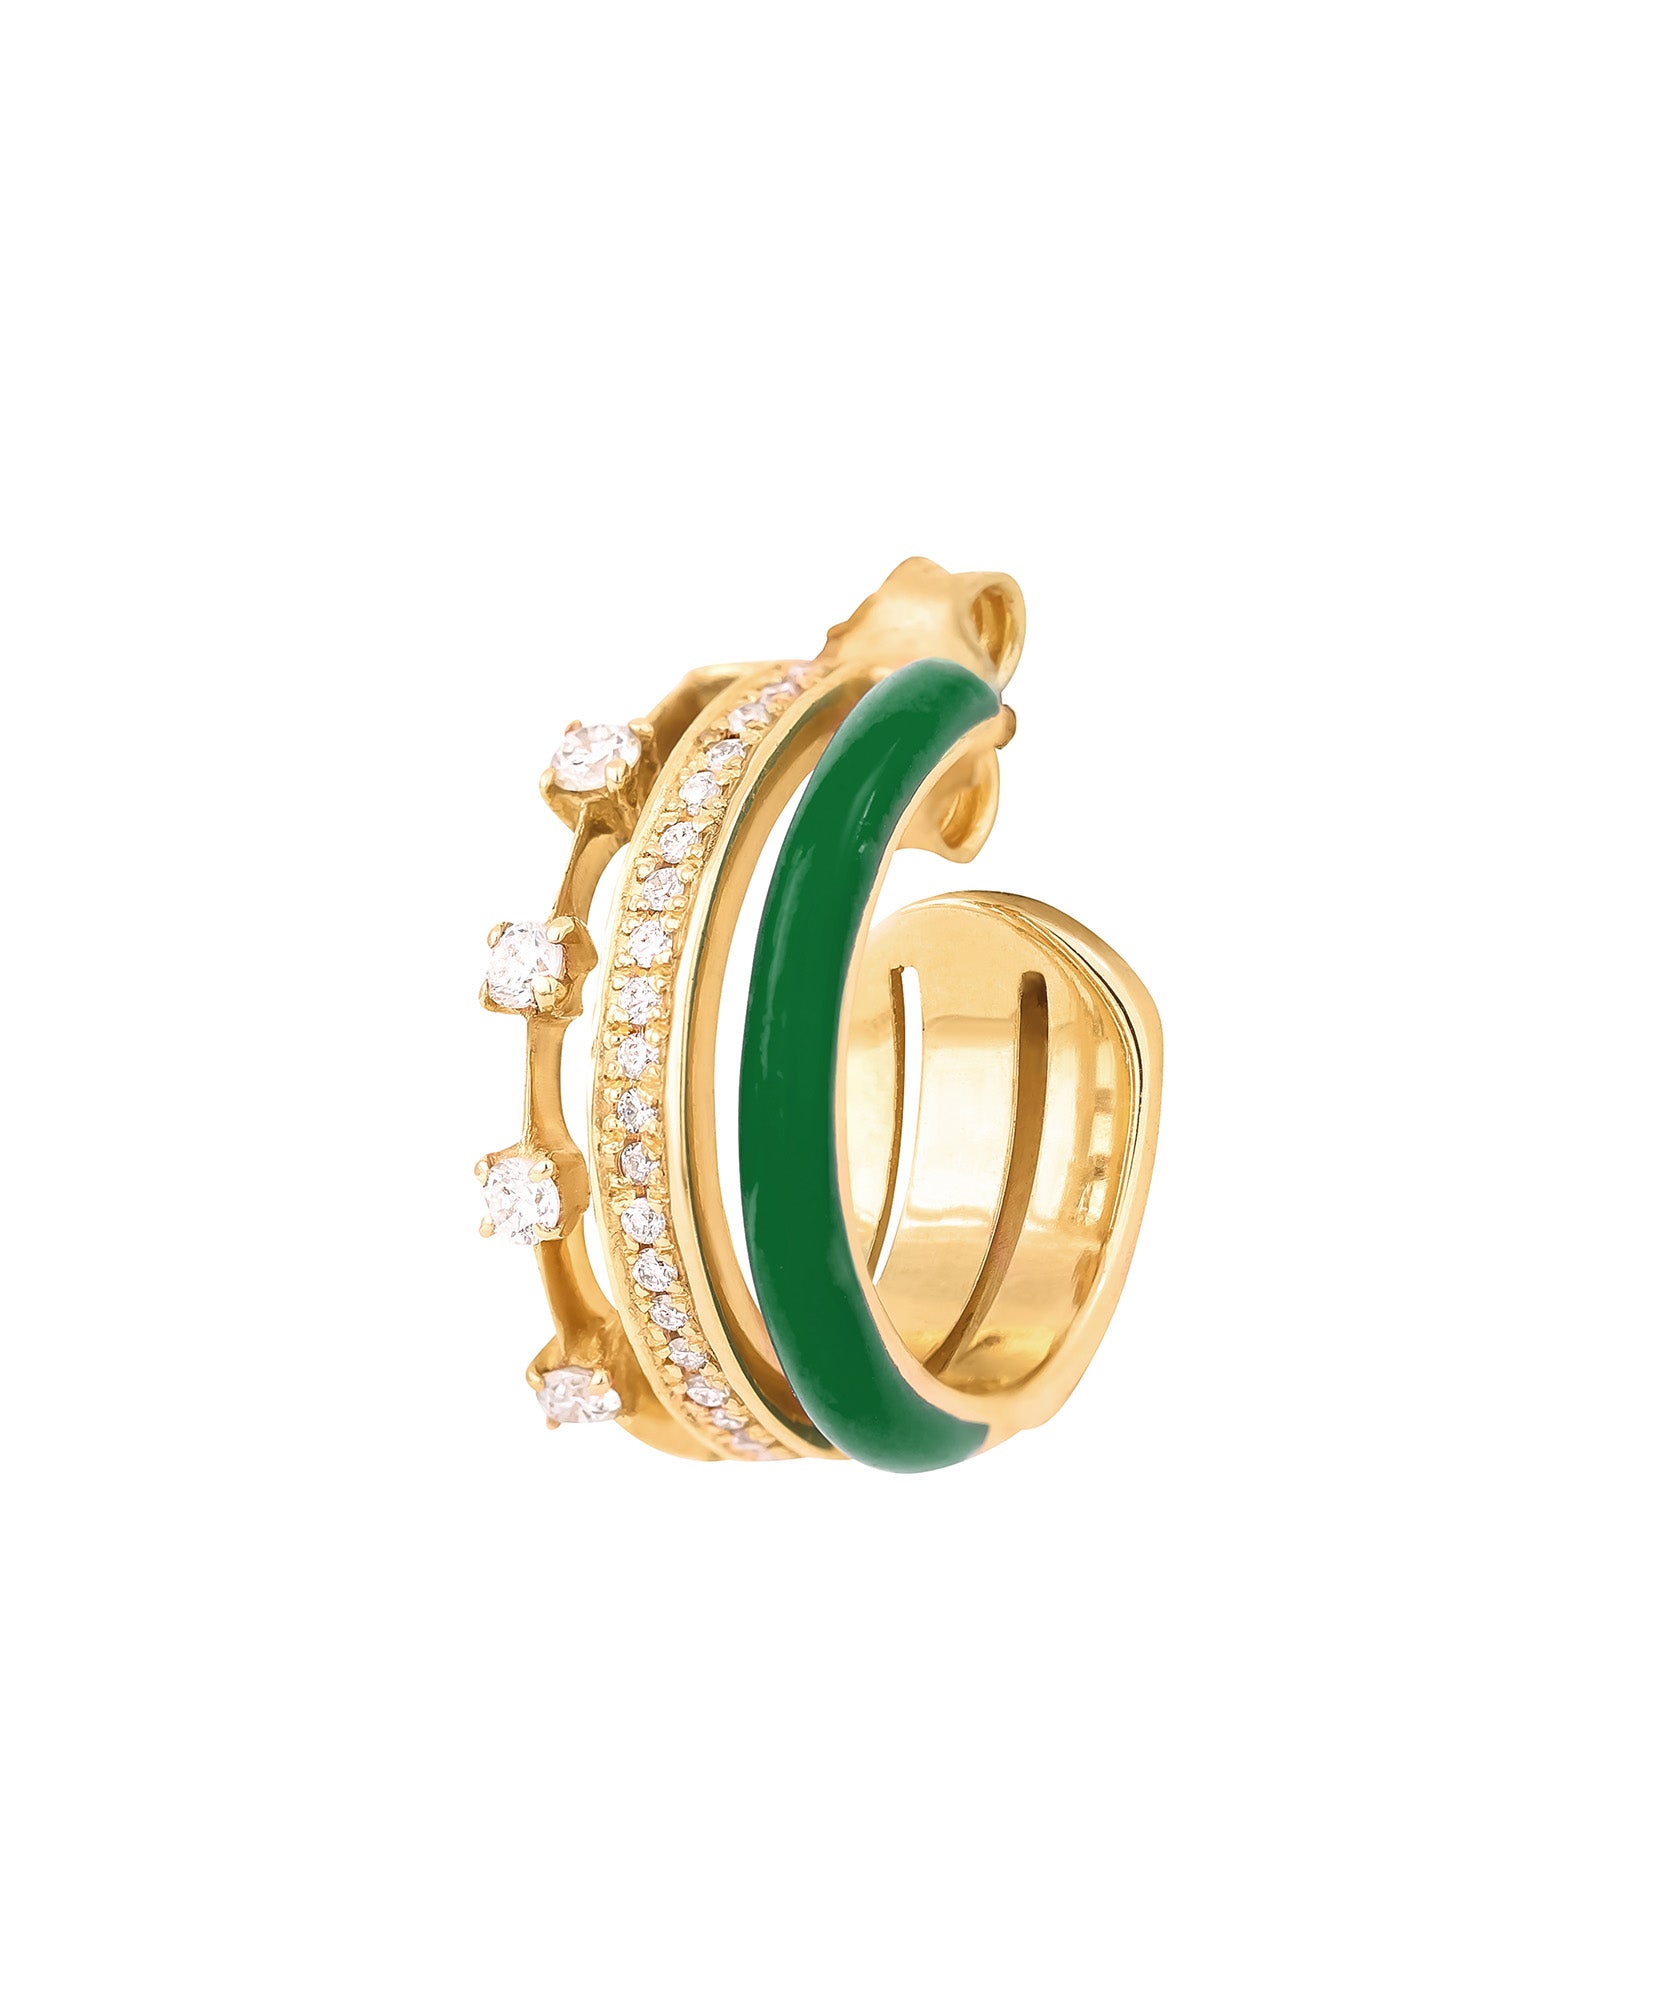 J by boghossian, gold, earring, hoop, triple hoop, white diamond, green enamel